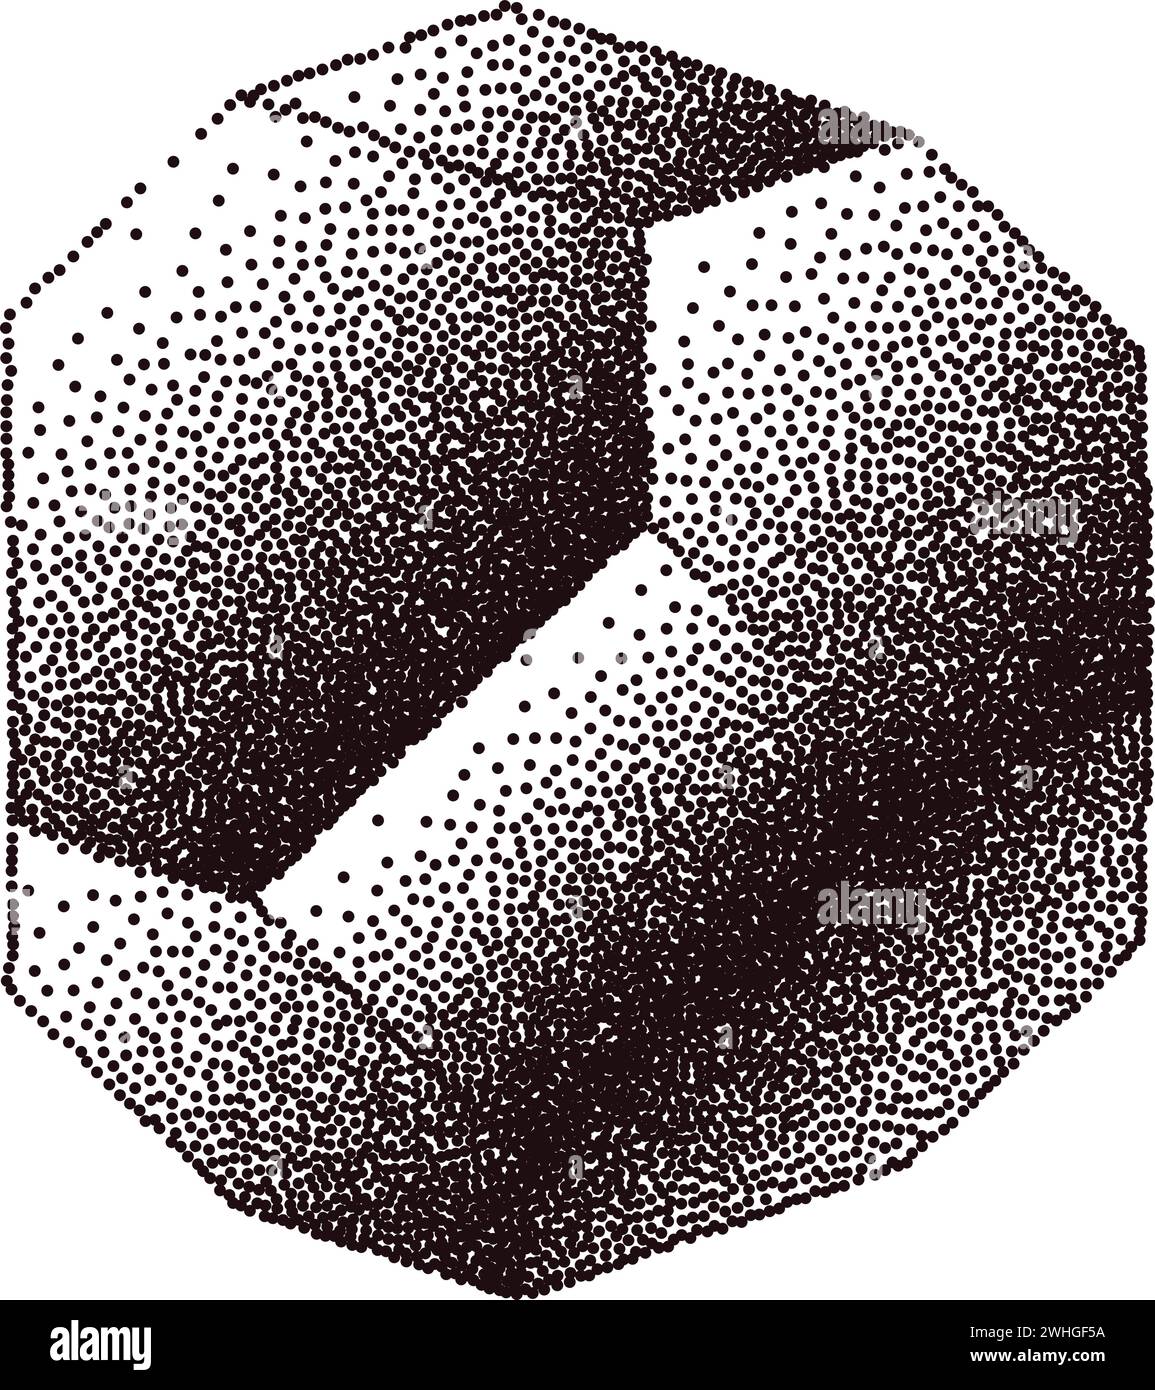 Abstrakte Illustration des geometrischen Kristalls in Schwarz-weiß-Vektor Stock Vektor